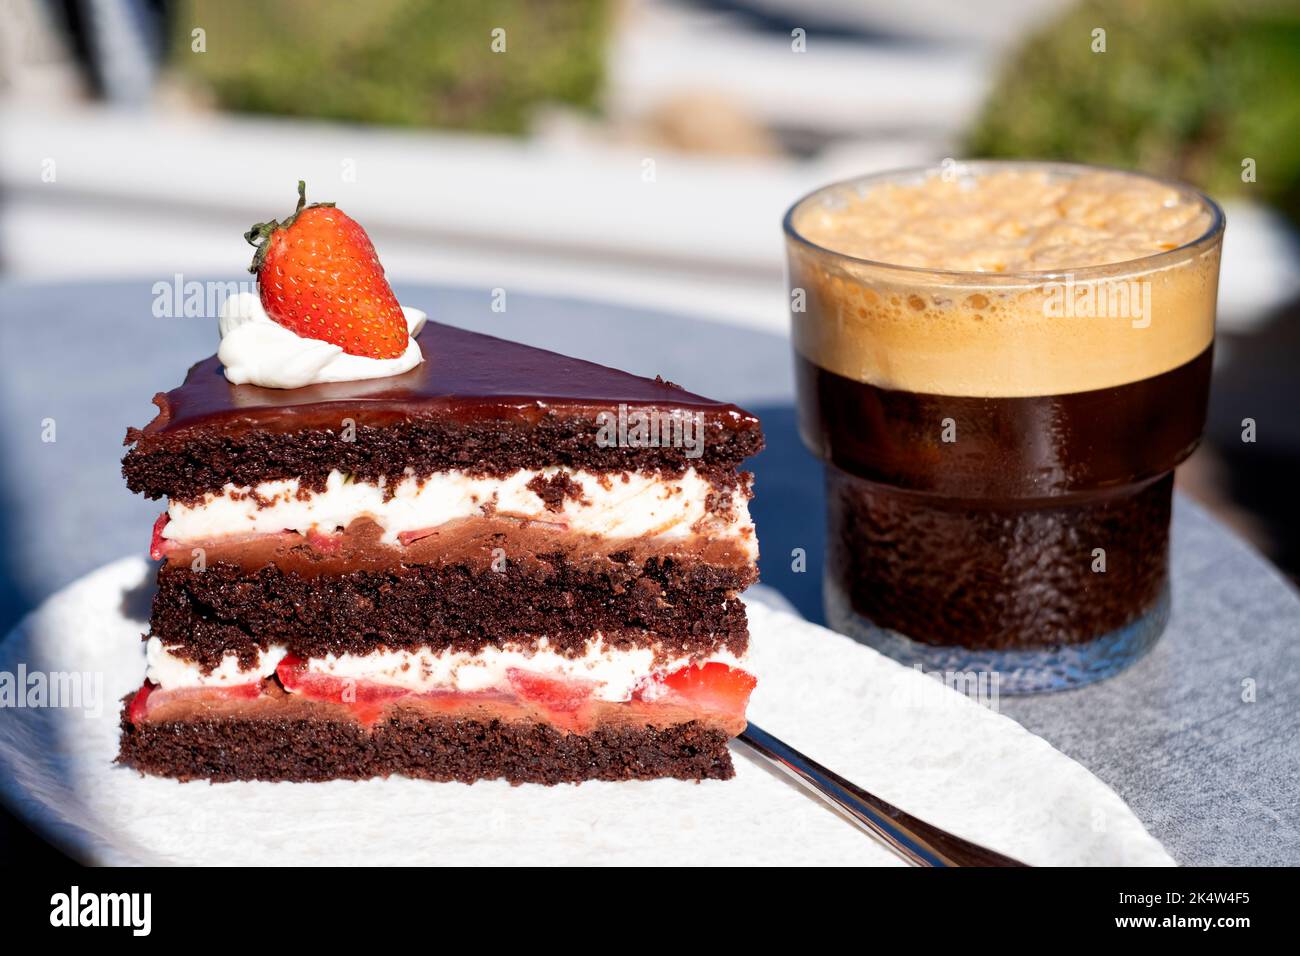 Una fetta di torta al cioccolato alla fragola di diavoli freschi servita su un tavolo da caffè all'aperto. la torta di panna fresca viene servita con un bicchiere di caffè ghiacciato Foto Stock